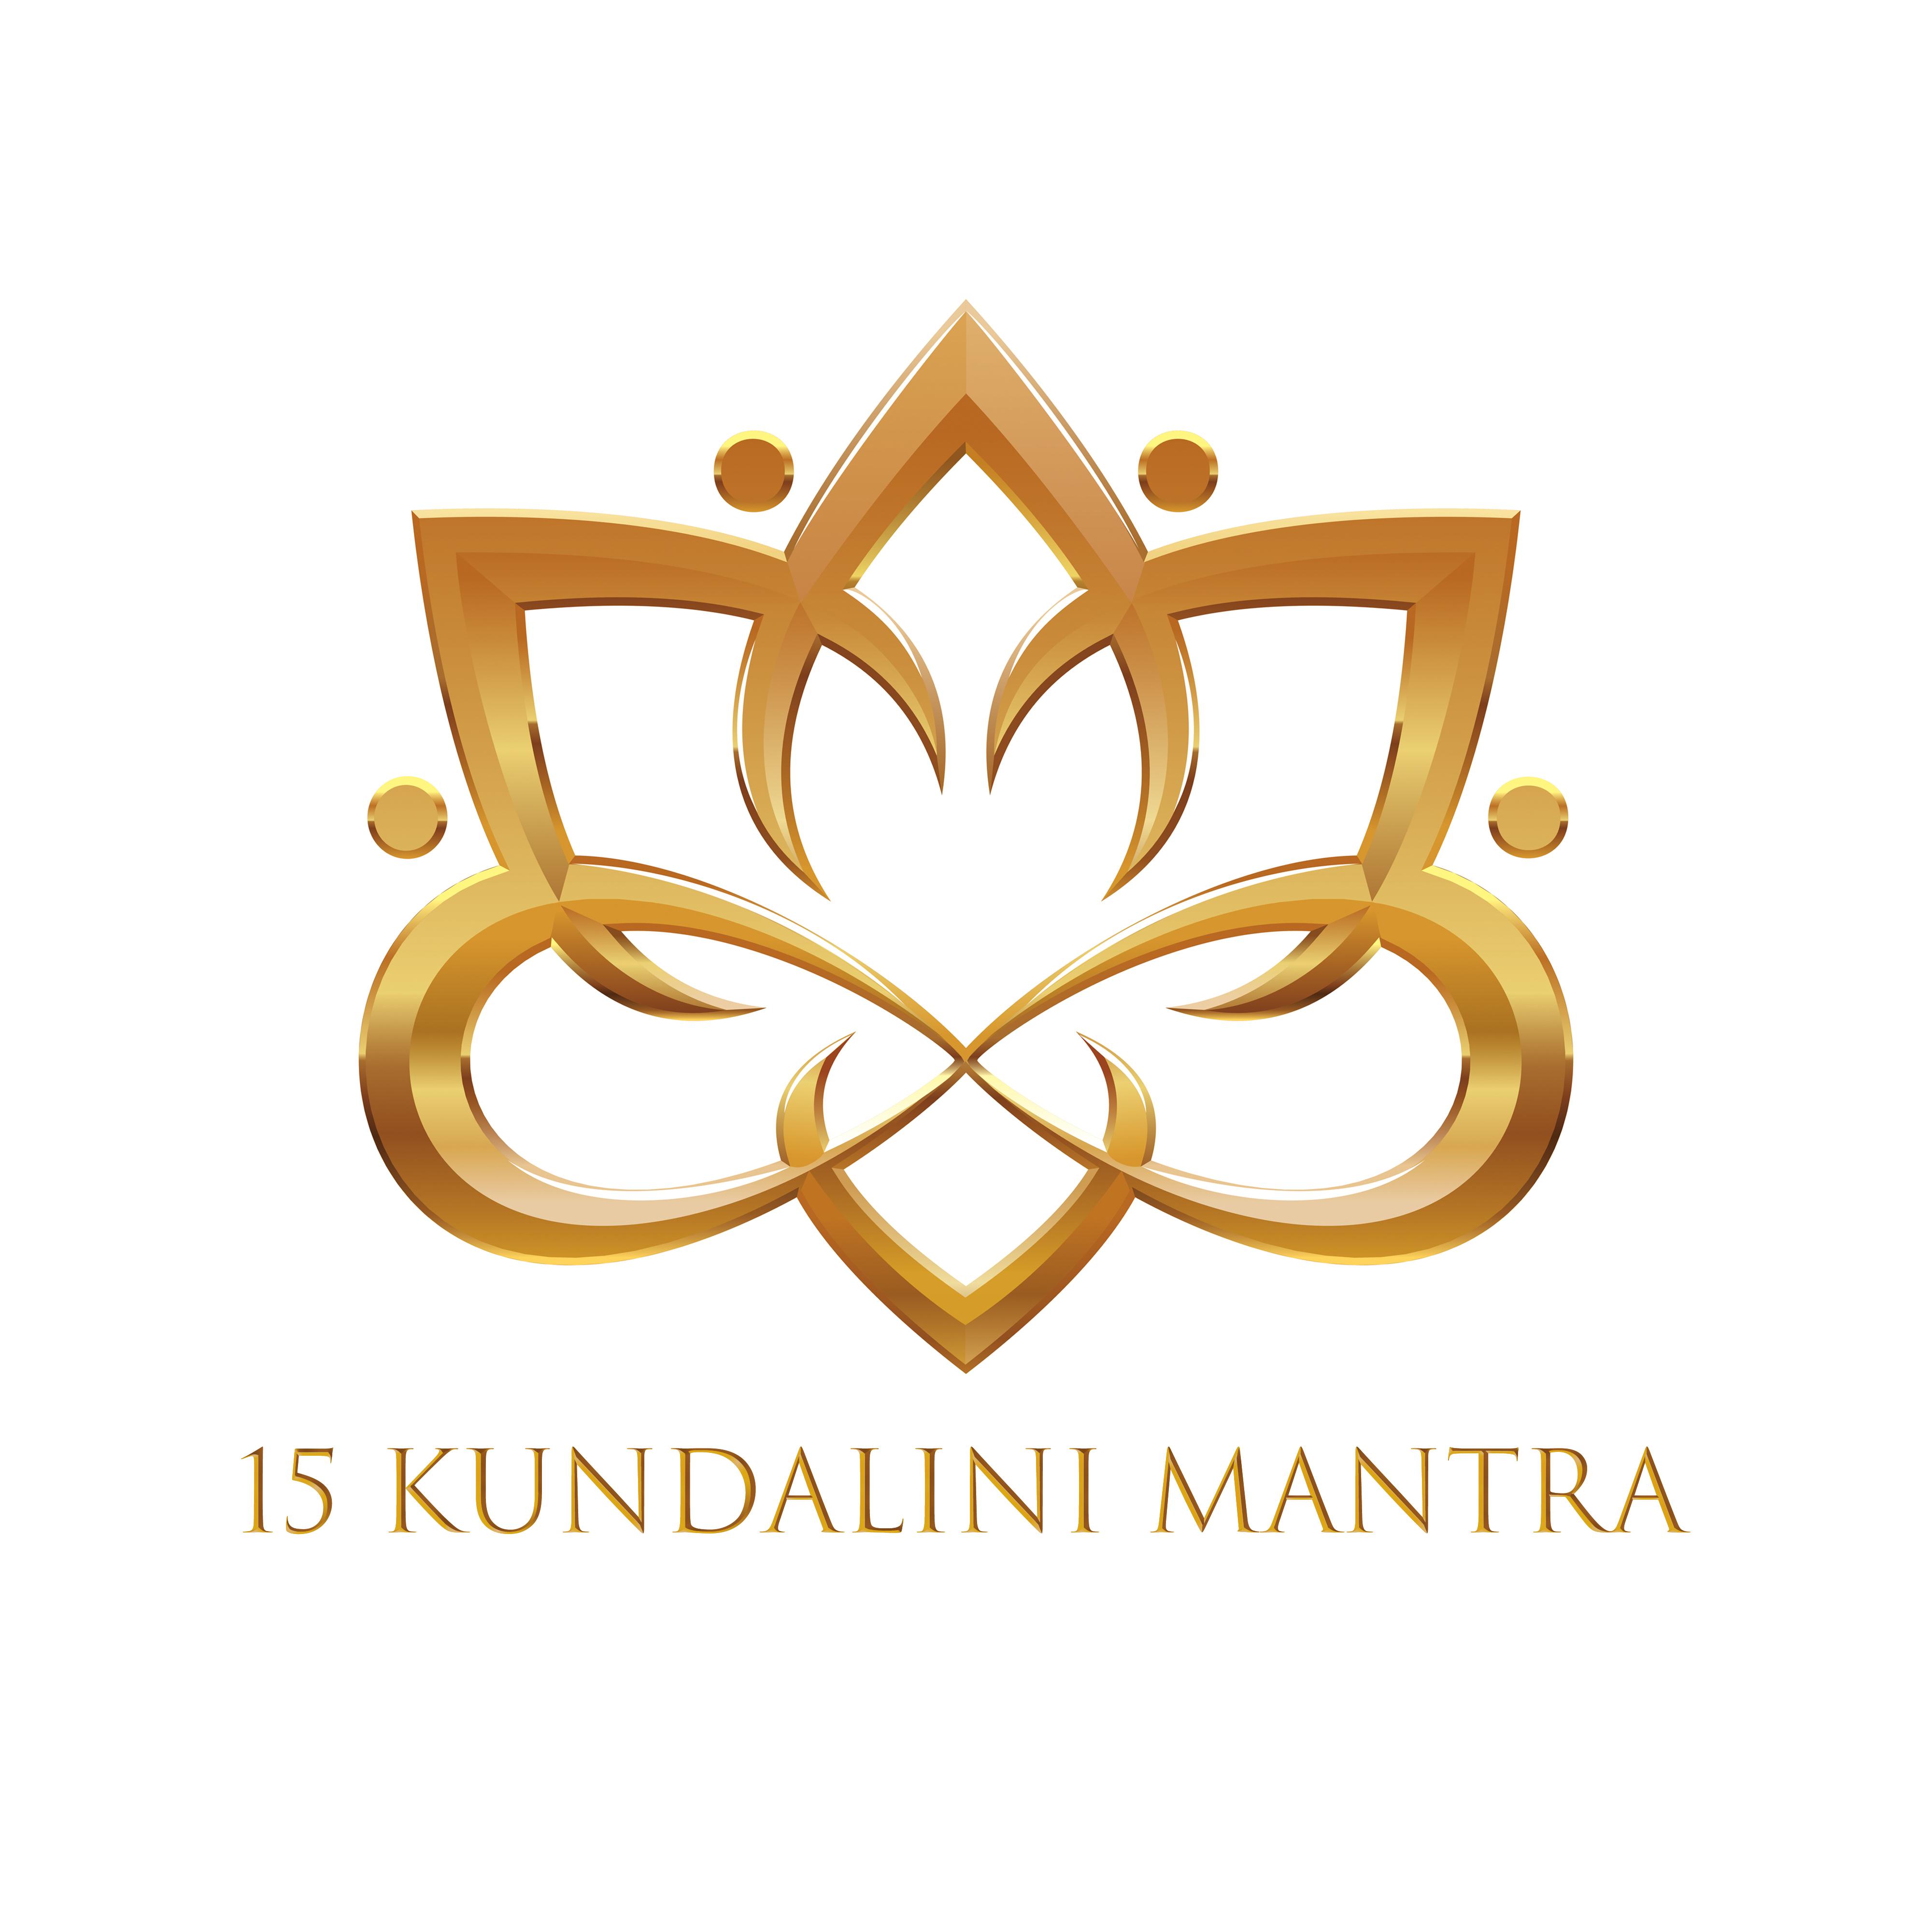 15 Kundalini Mantra